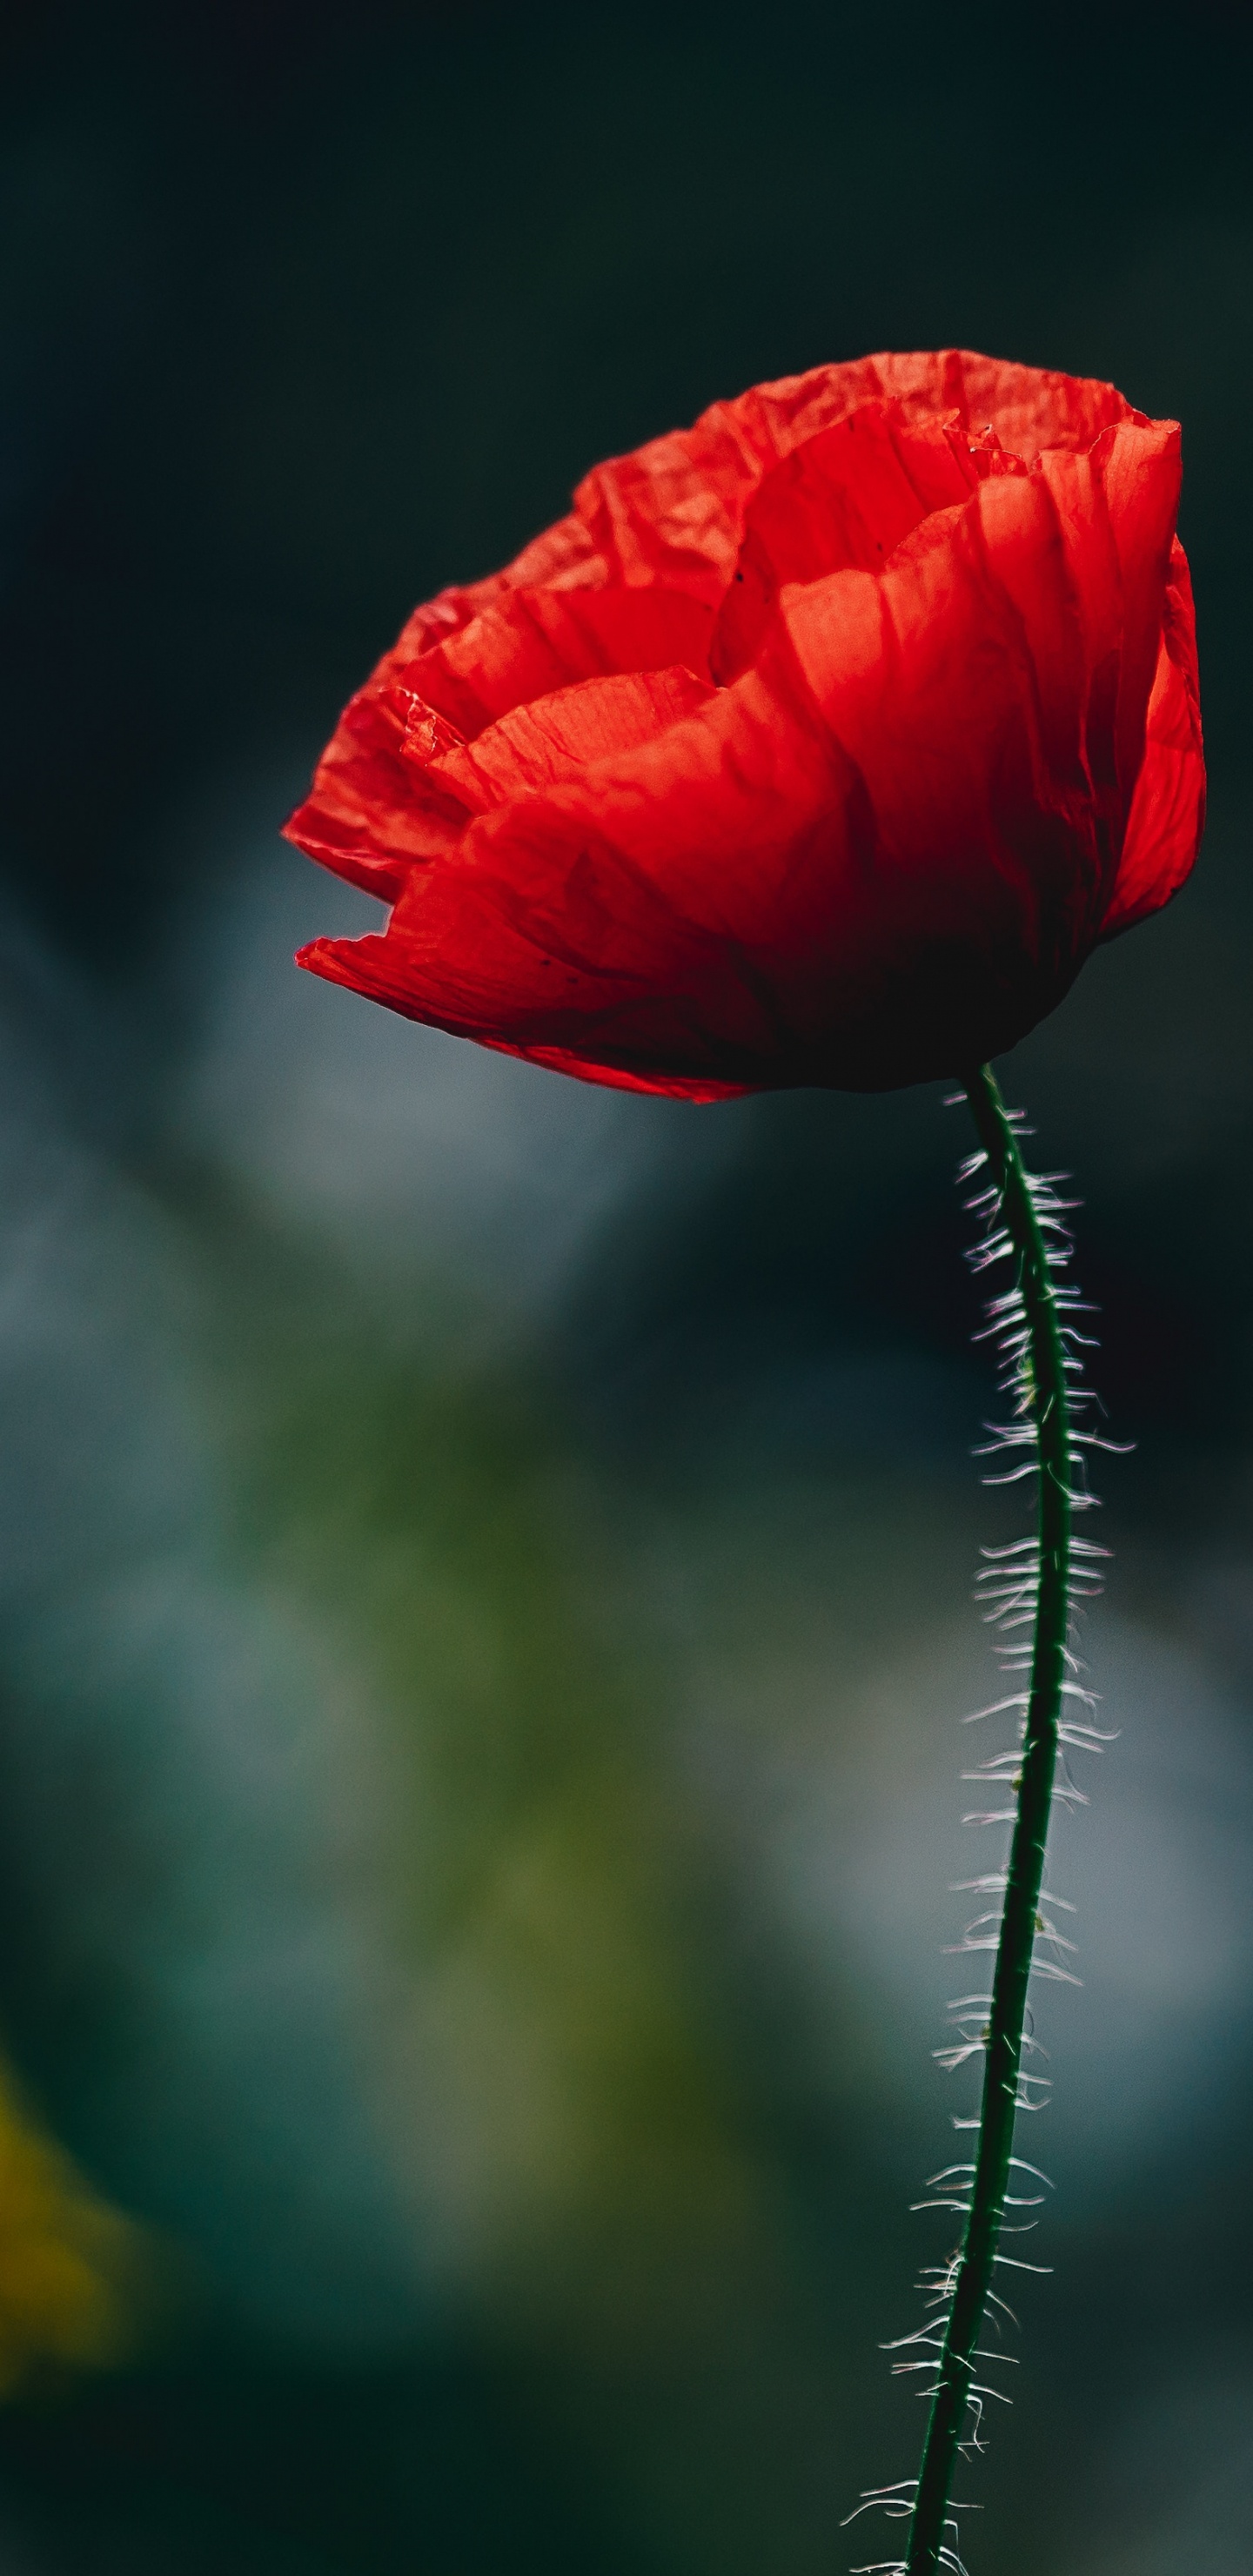 Red Flower in Tilt Shift Lens. Wallpaper in 1440x2960 Resolution